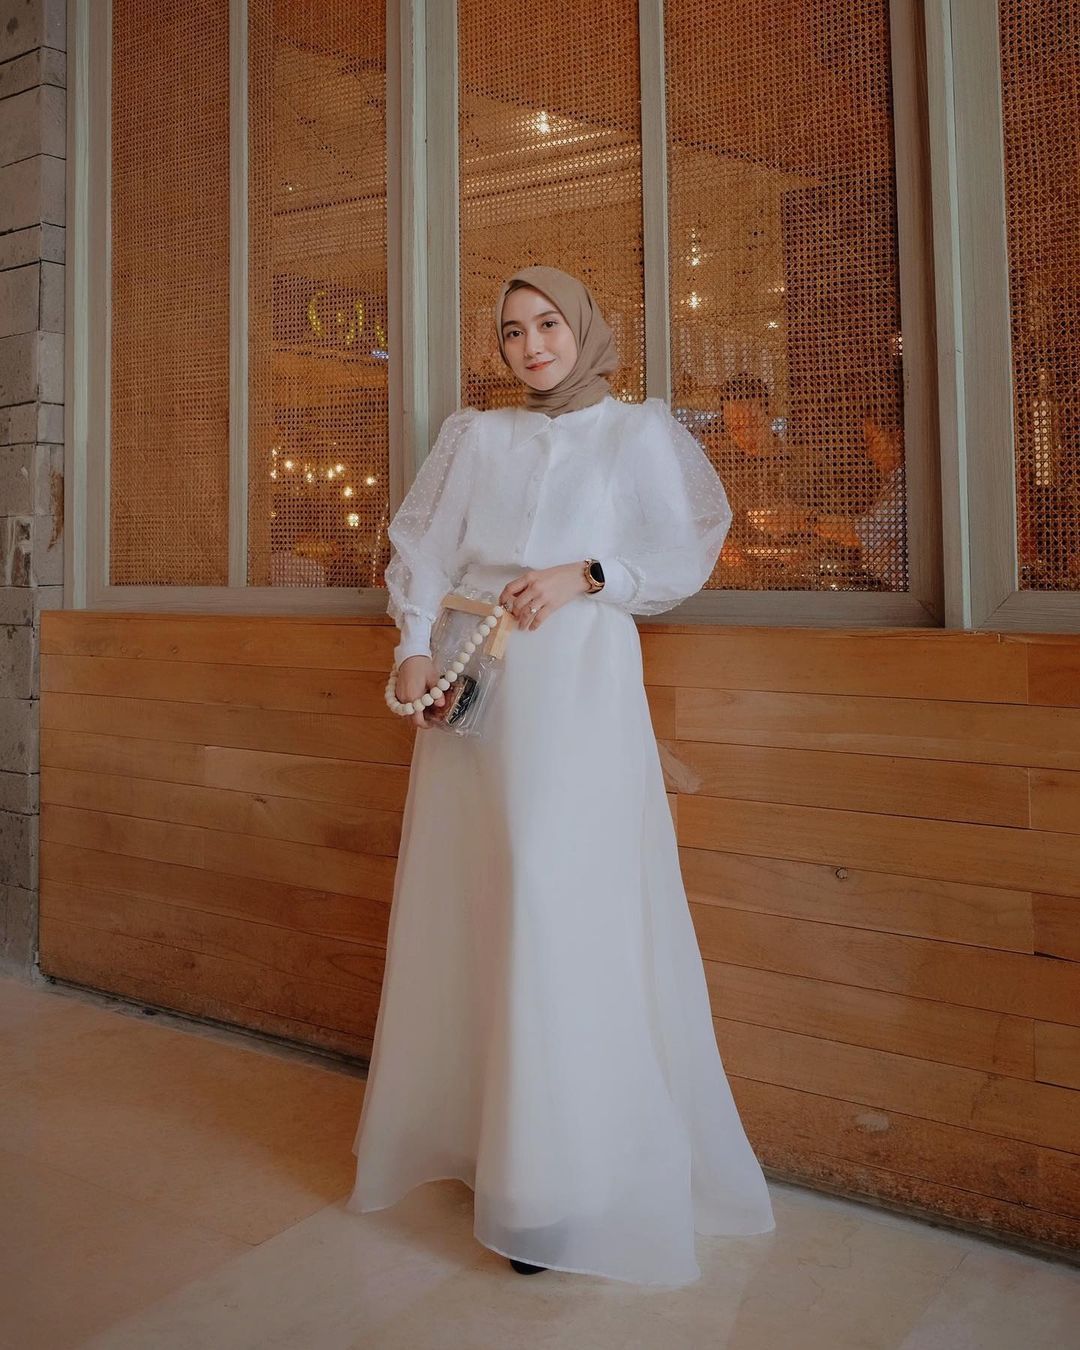 Inspirasi Padu-padan Outfit Puff Sleeves untuk Perempuan Hijab